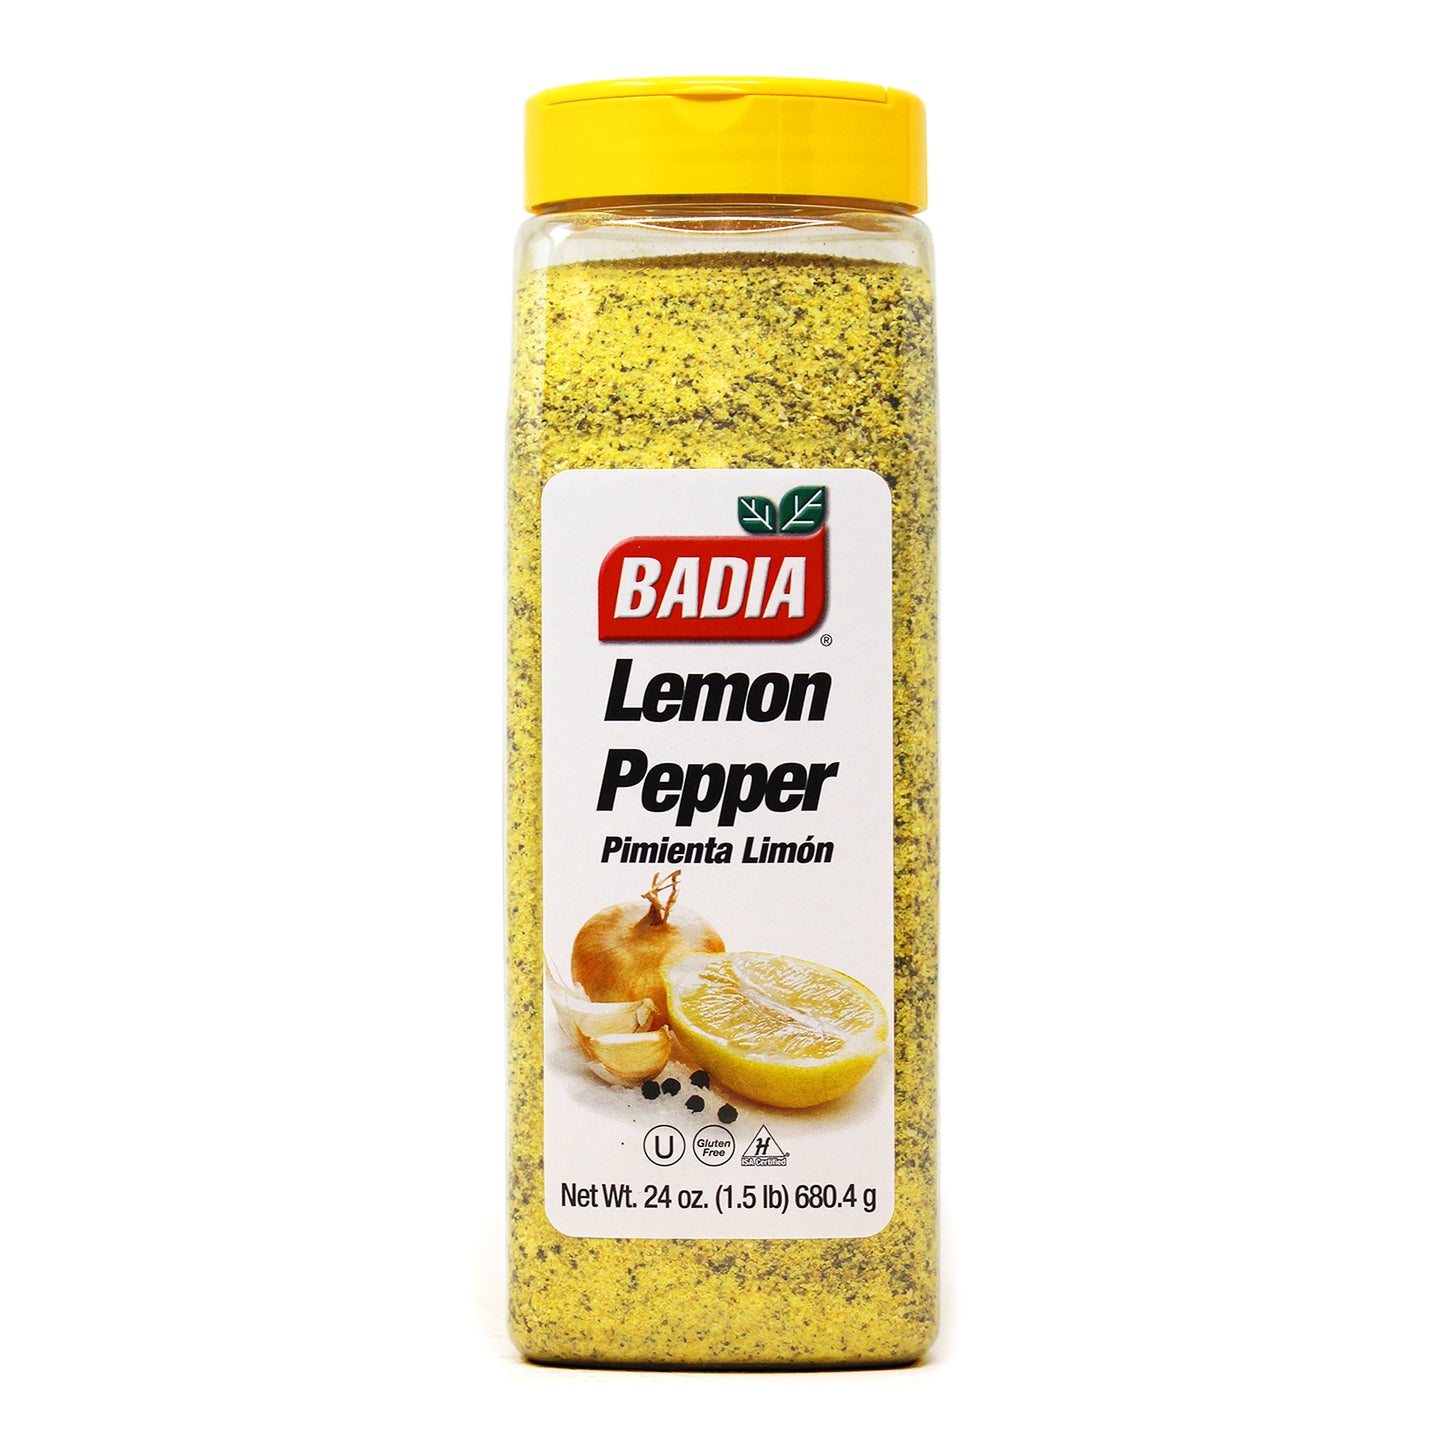 Badia Lemon Pepper 680.4g